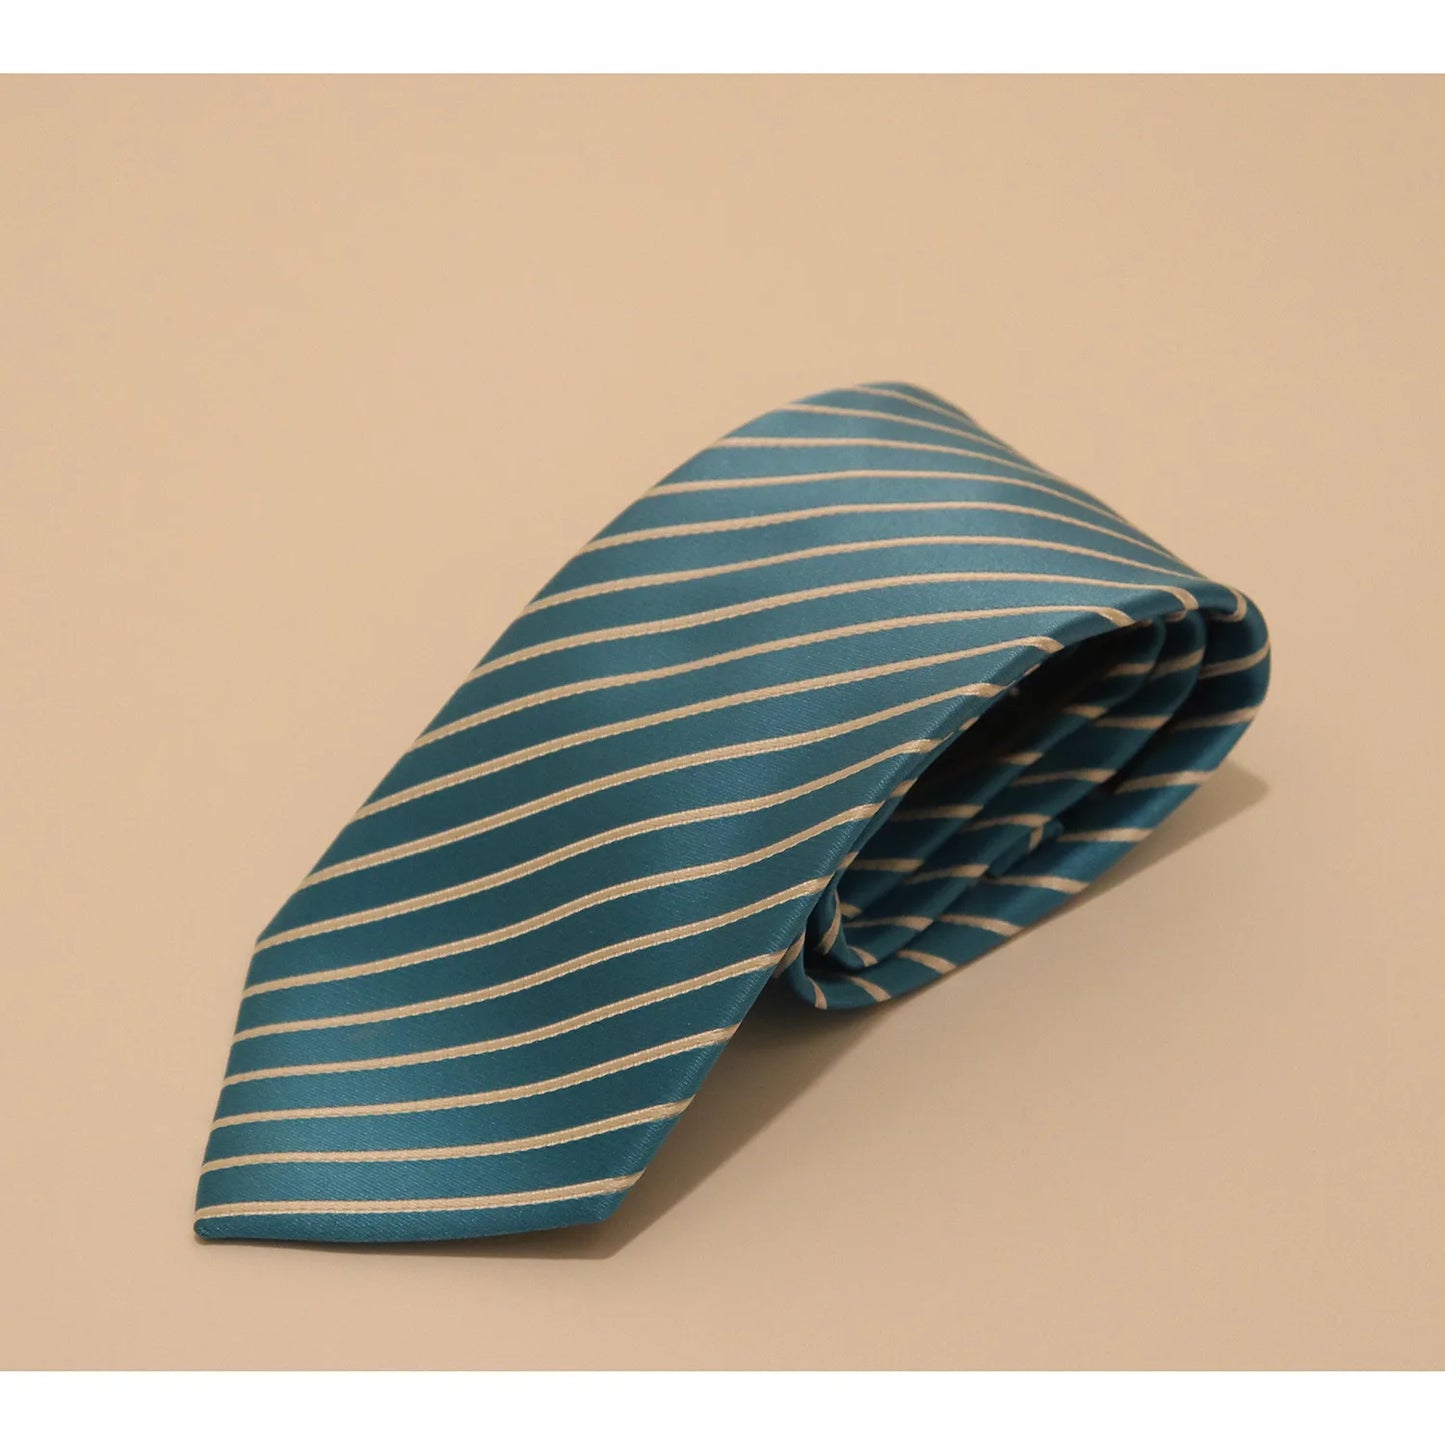 The Shirt Shop Tie - Aqua Blue and White Stripe